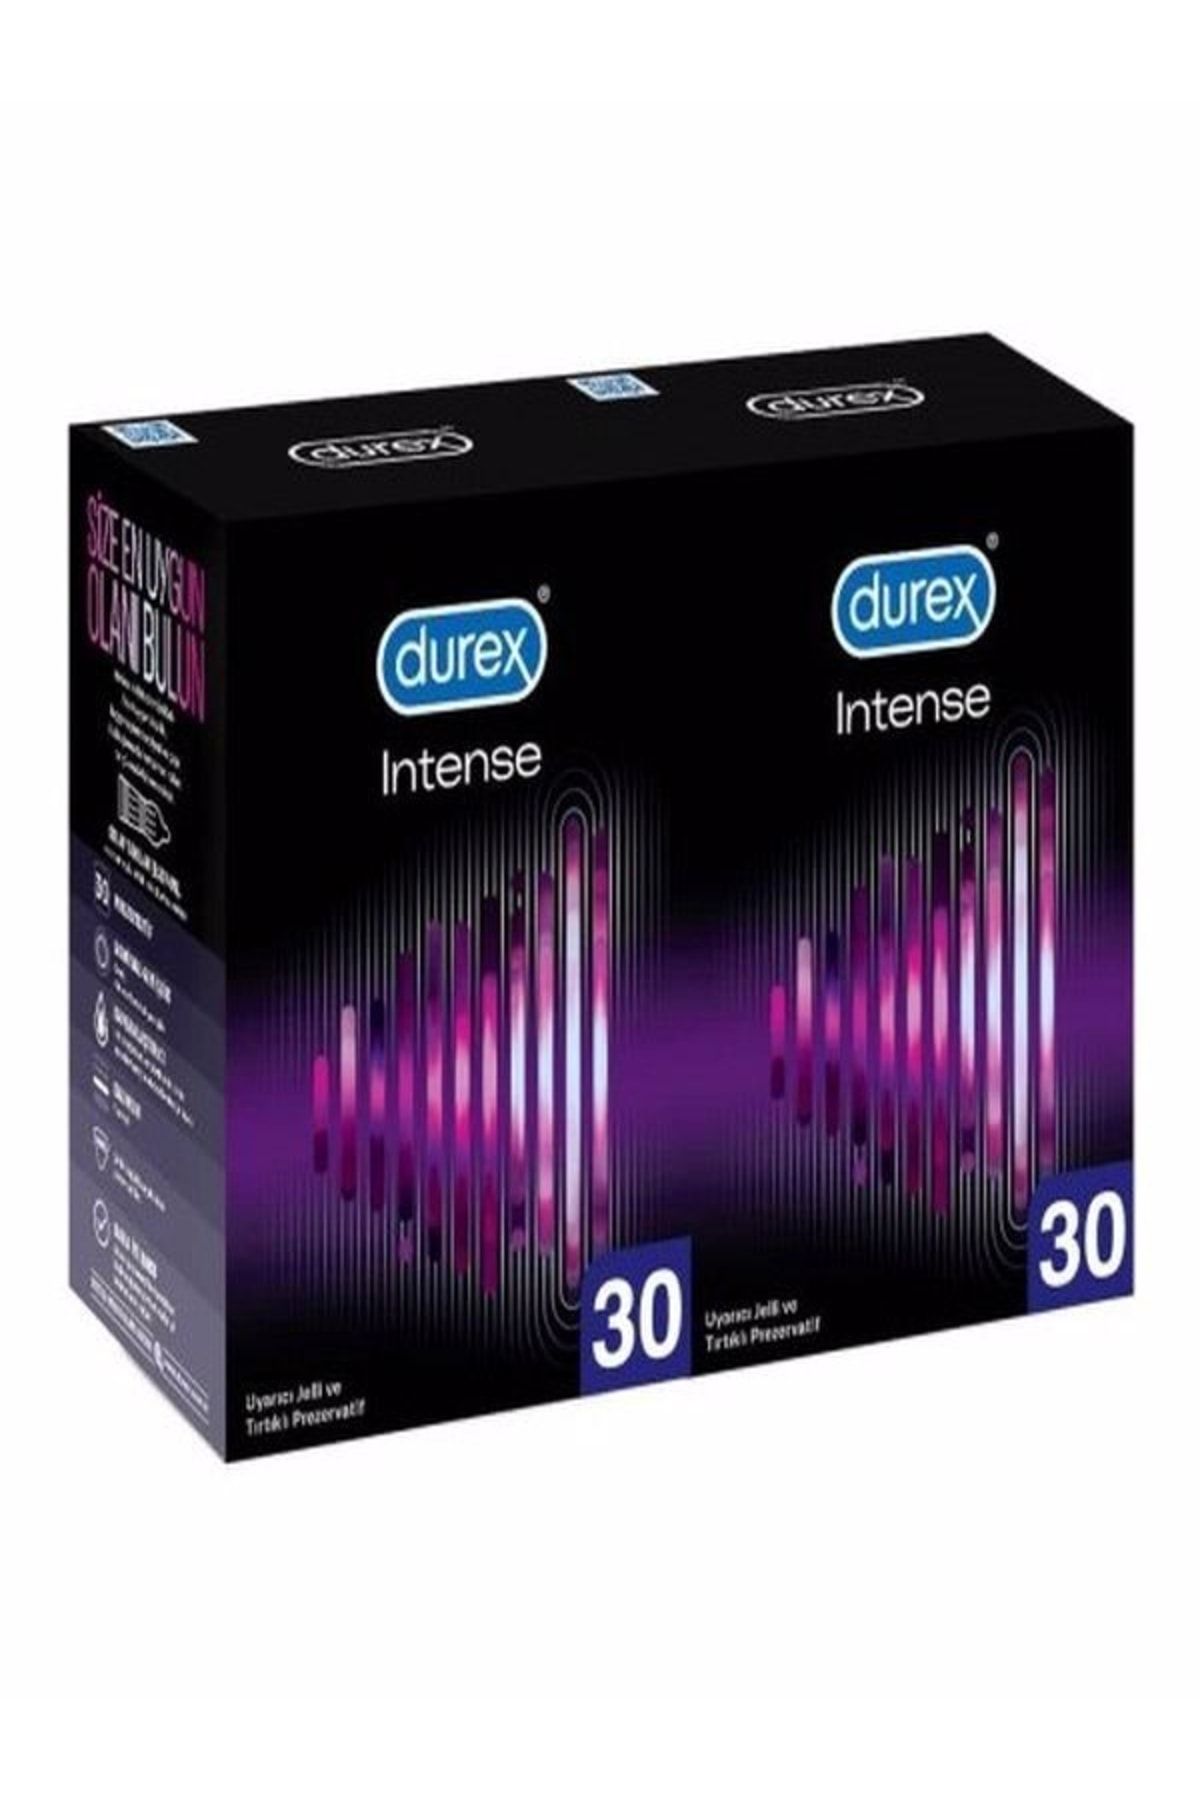 Durex Intense Uyarıcı Prezervatif 30 Lu X 2 Adet (60 Adet)- Gizli Paketleme